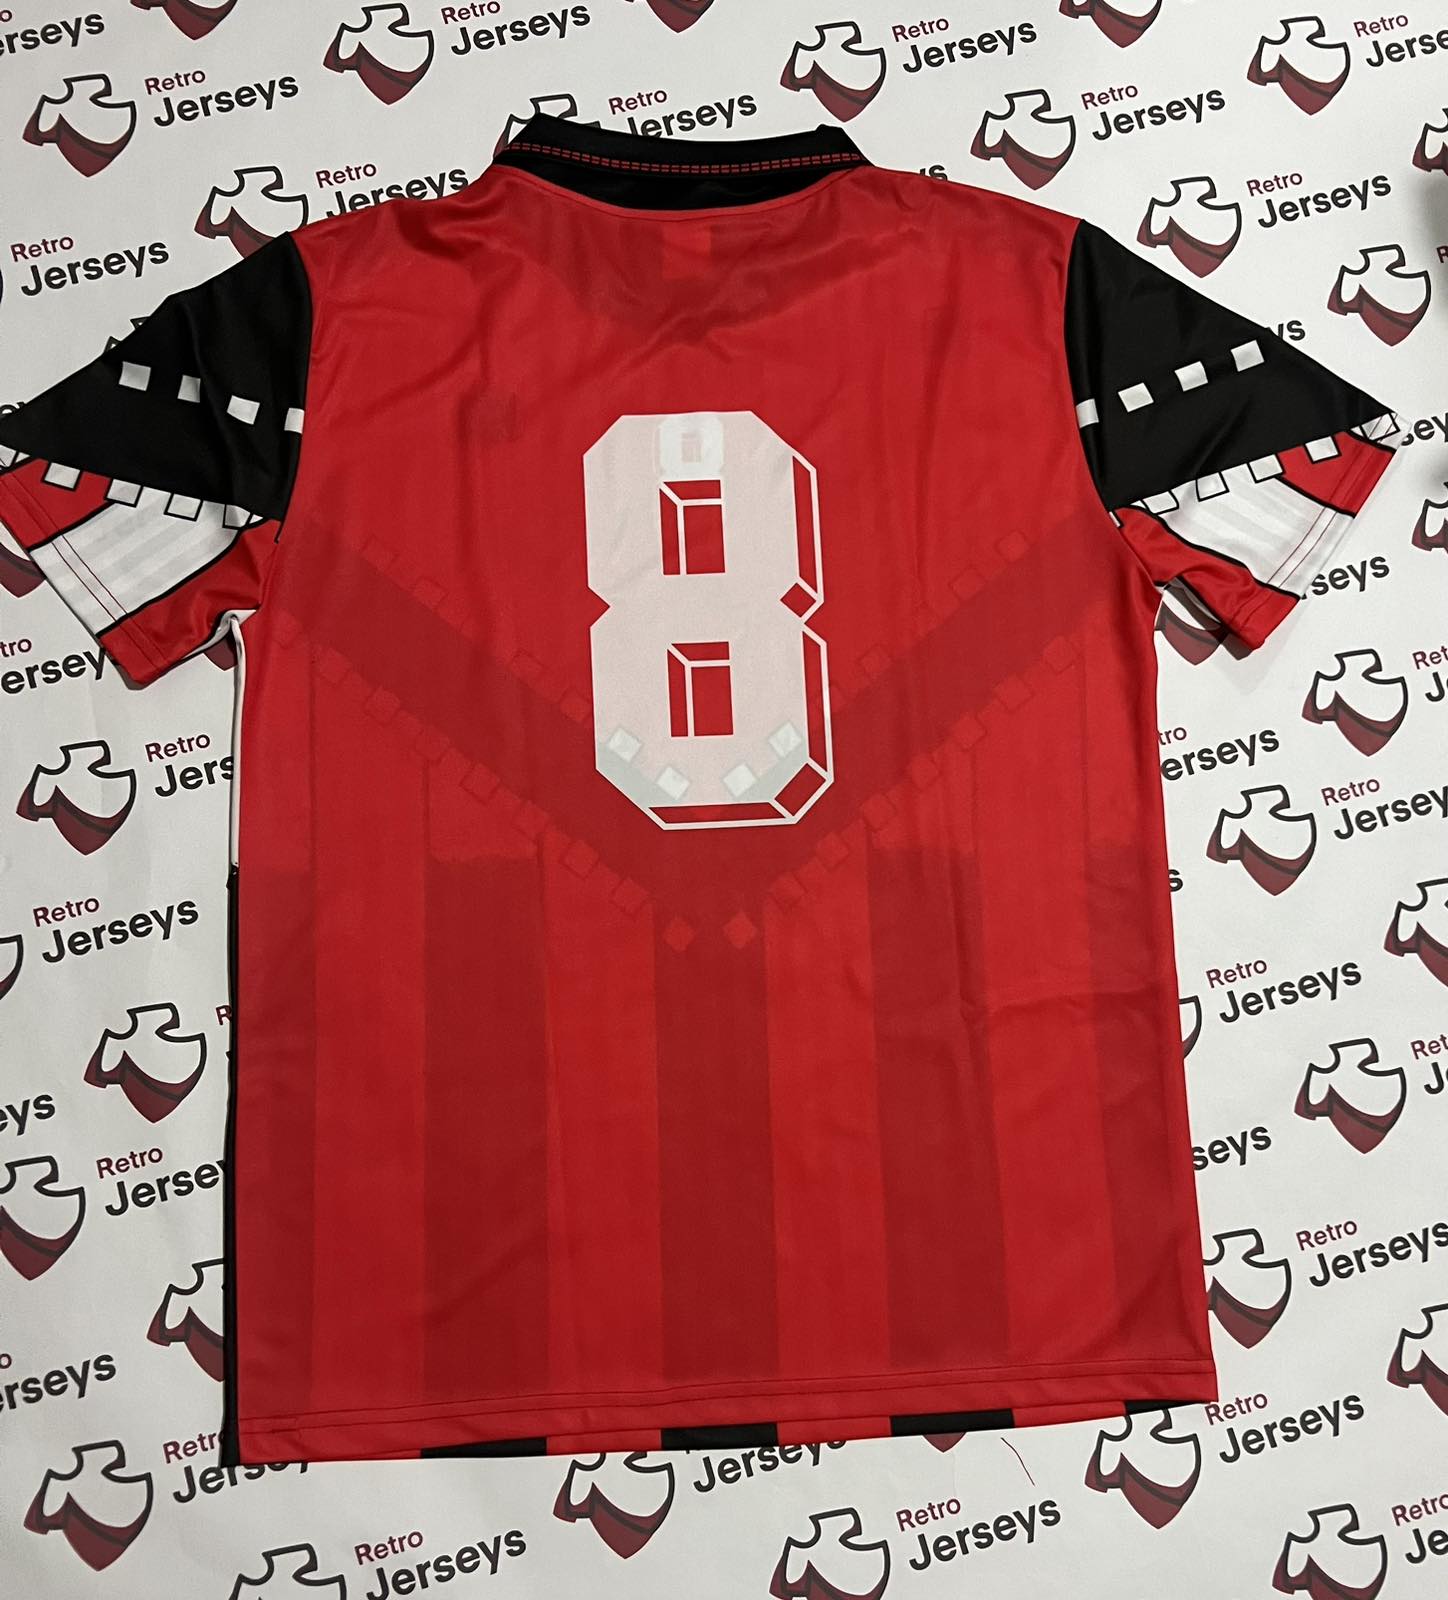 Albania National Shirt 1994 Home - Retro Jerseys, Fanella Shqipërisë - Retro Jerseys